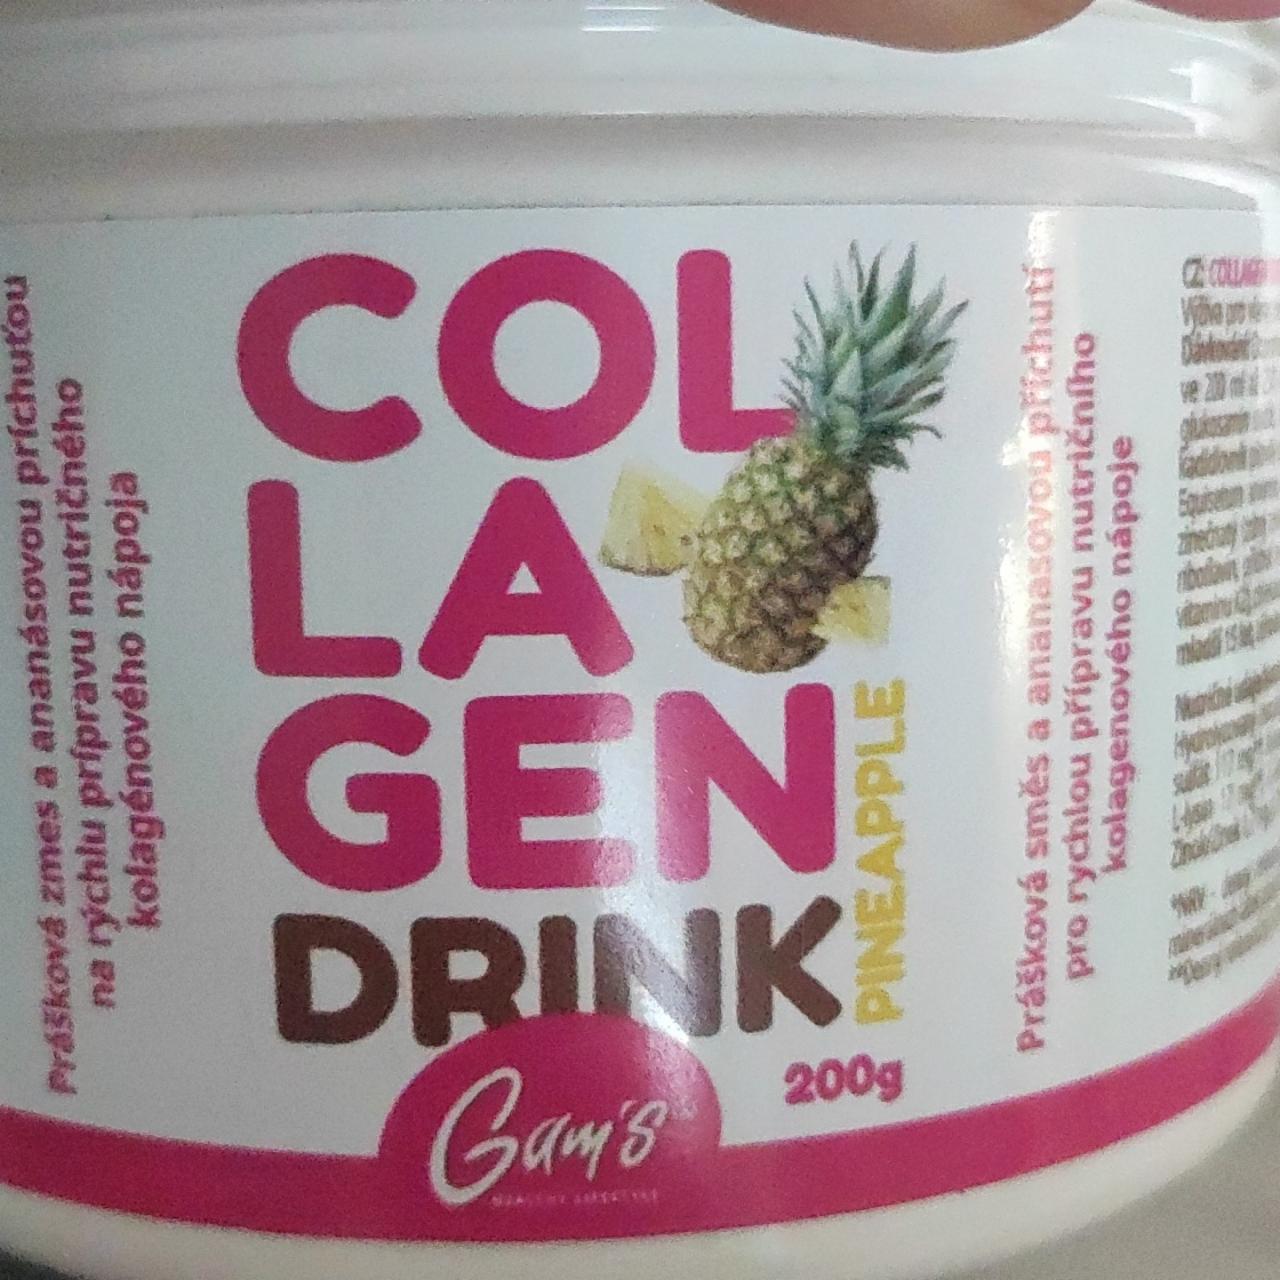 Fotografie - Collagen Drink Pineapple Gam's